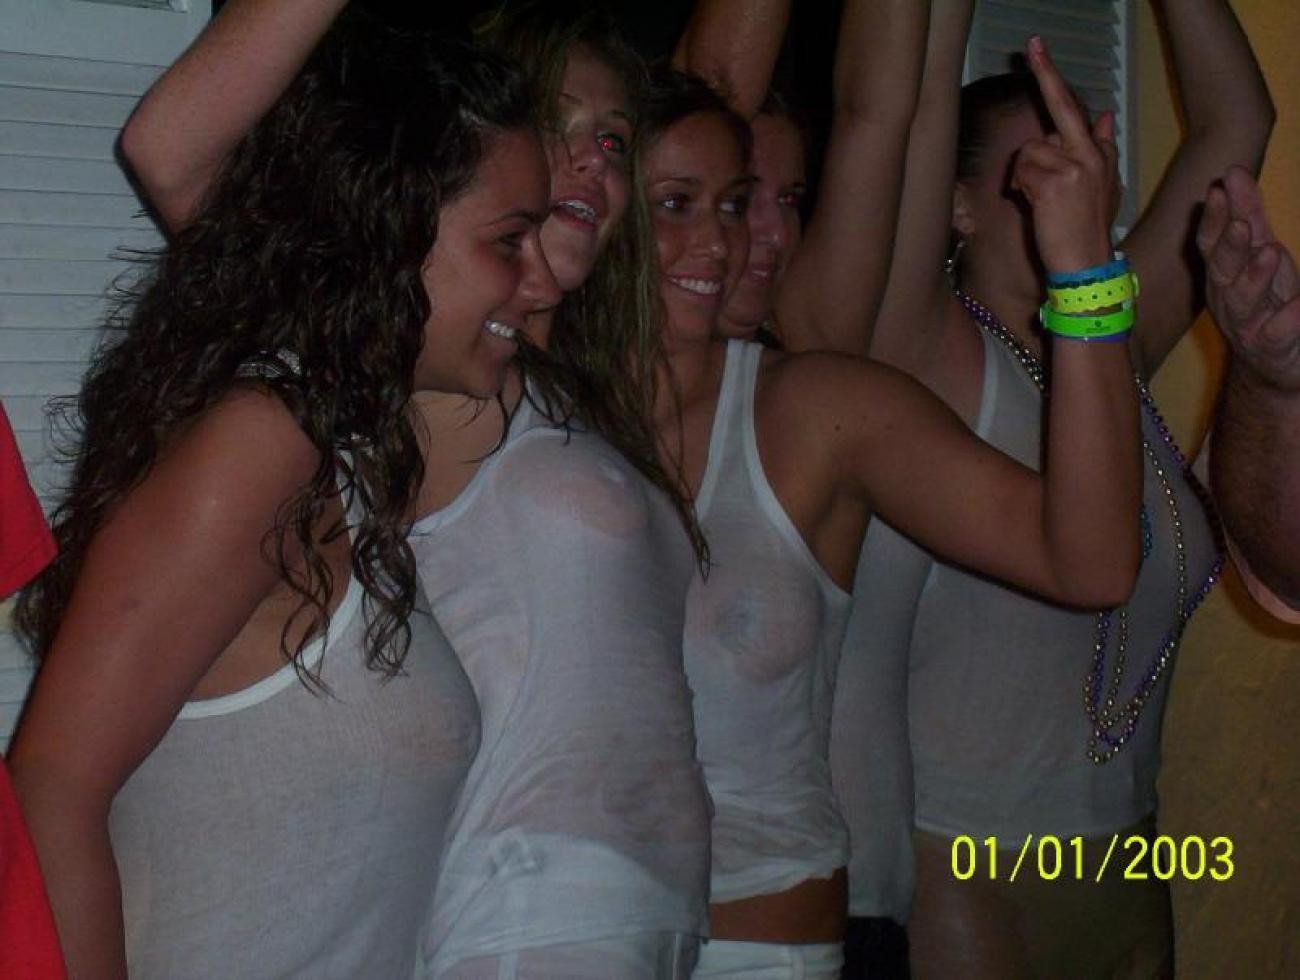 Fotos de chicas borrachas posando desnudas
 #77131562